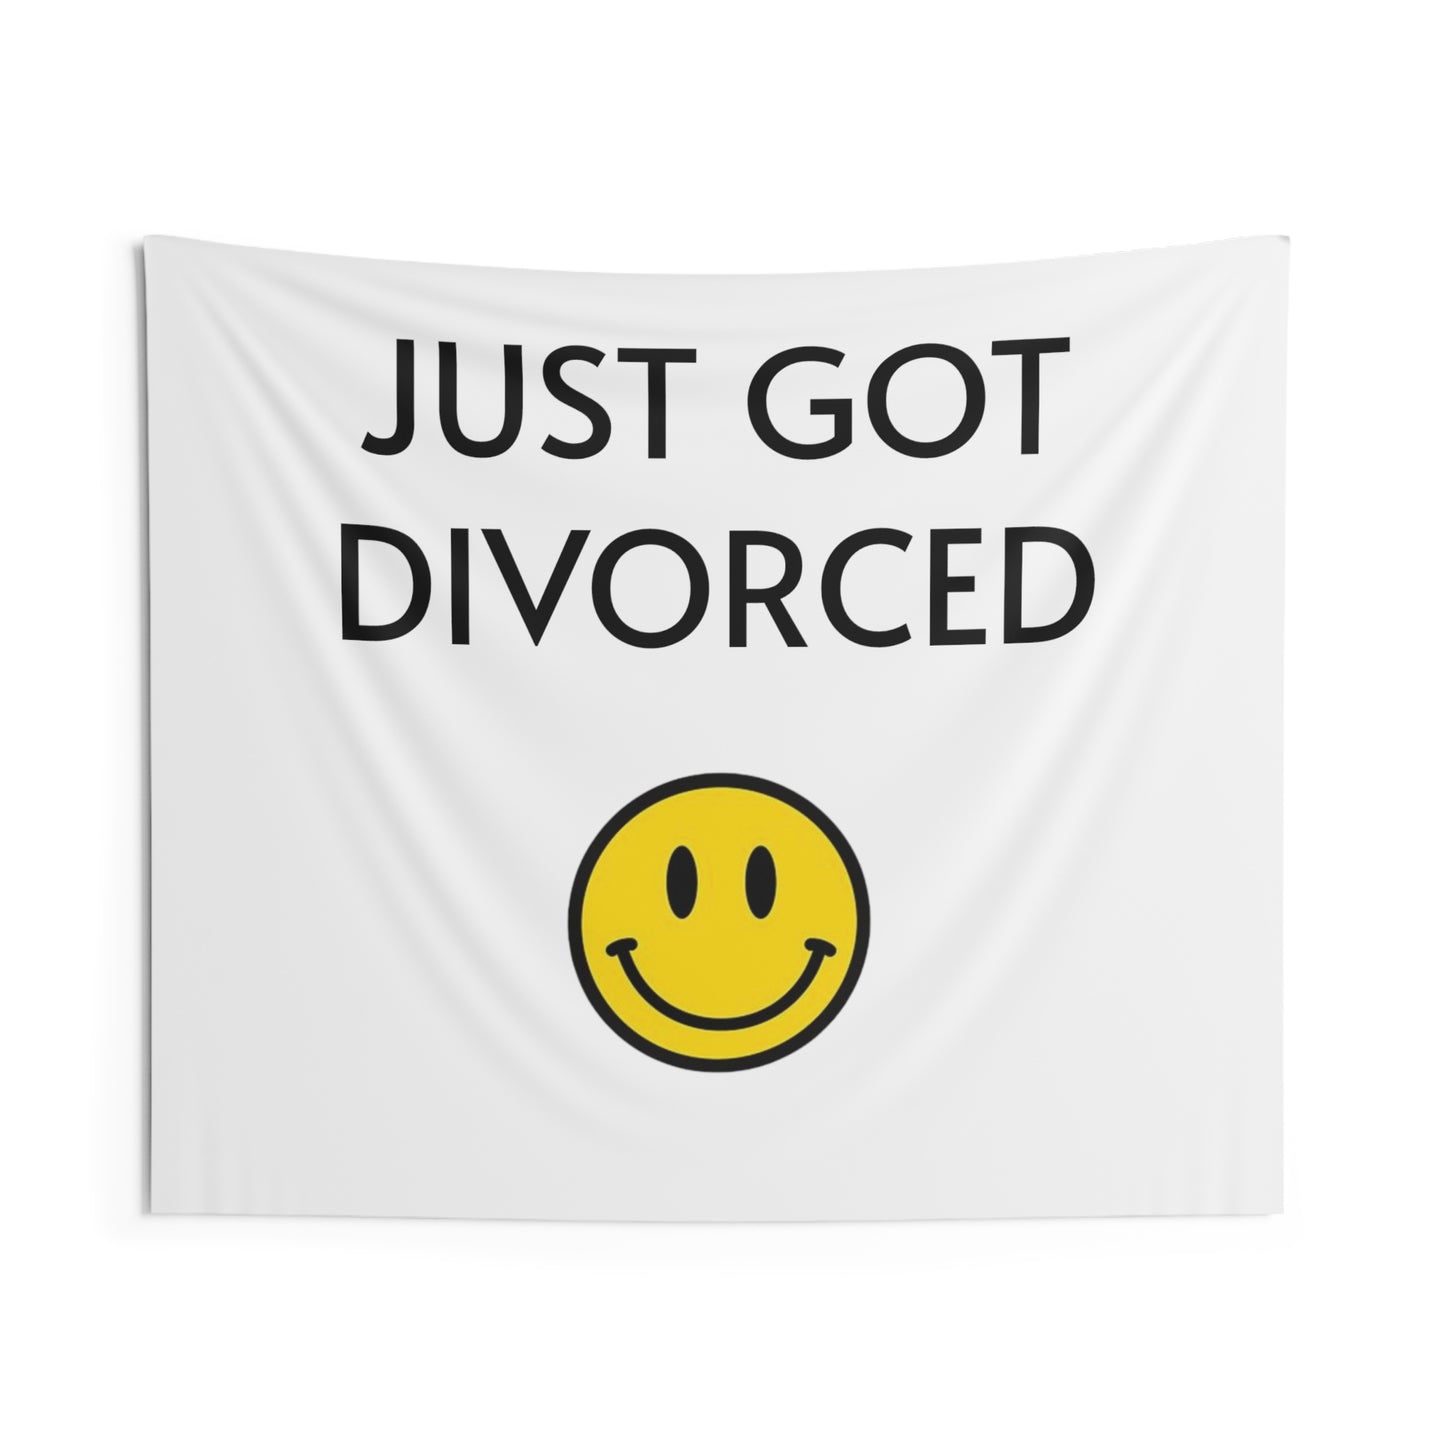 Just got divorced flag